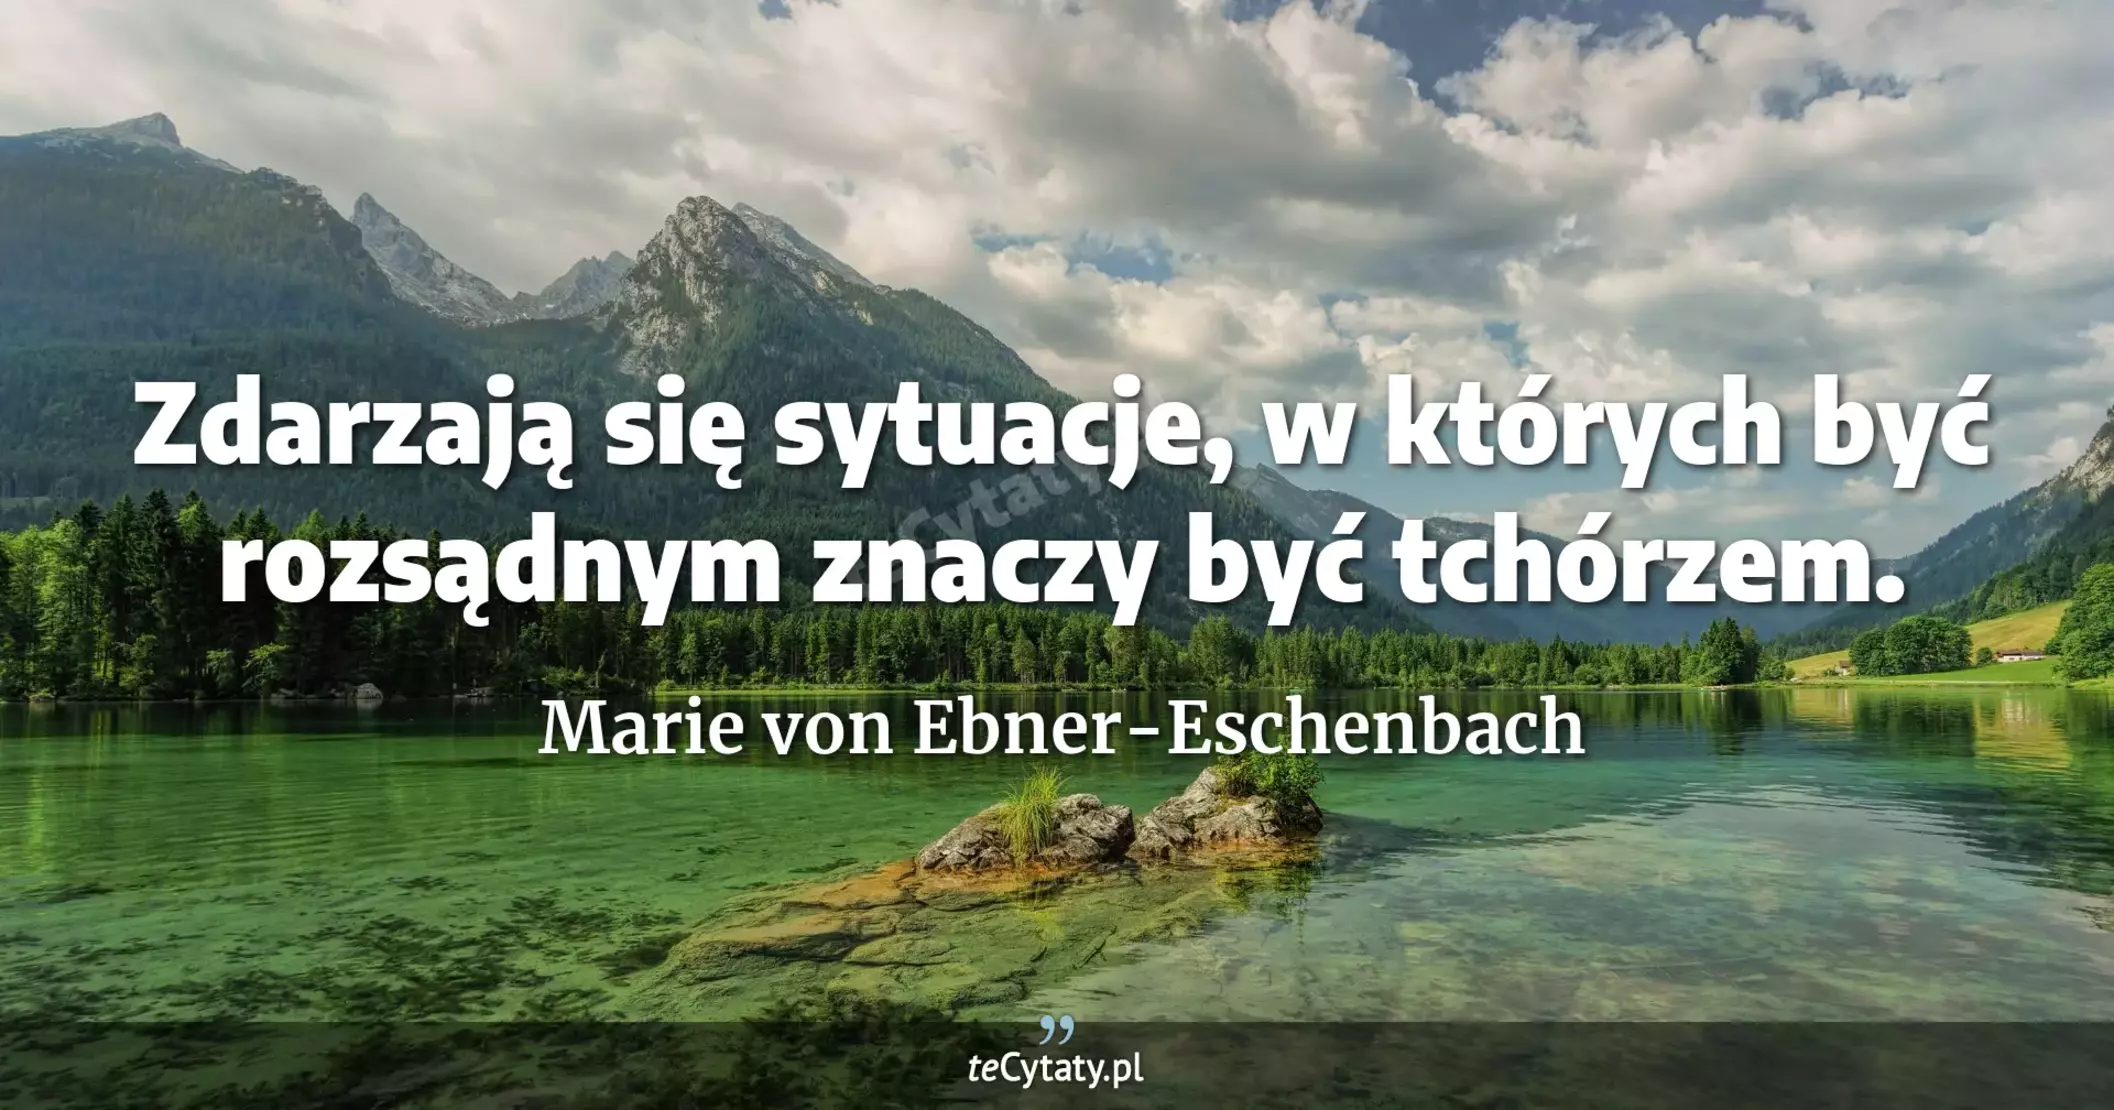 Zdarzają się sytuacje, w których być rozsądnym znaczy być tchórzem. - Marie von Ebner-Eschenbach